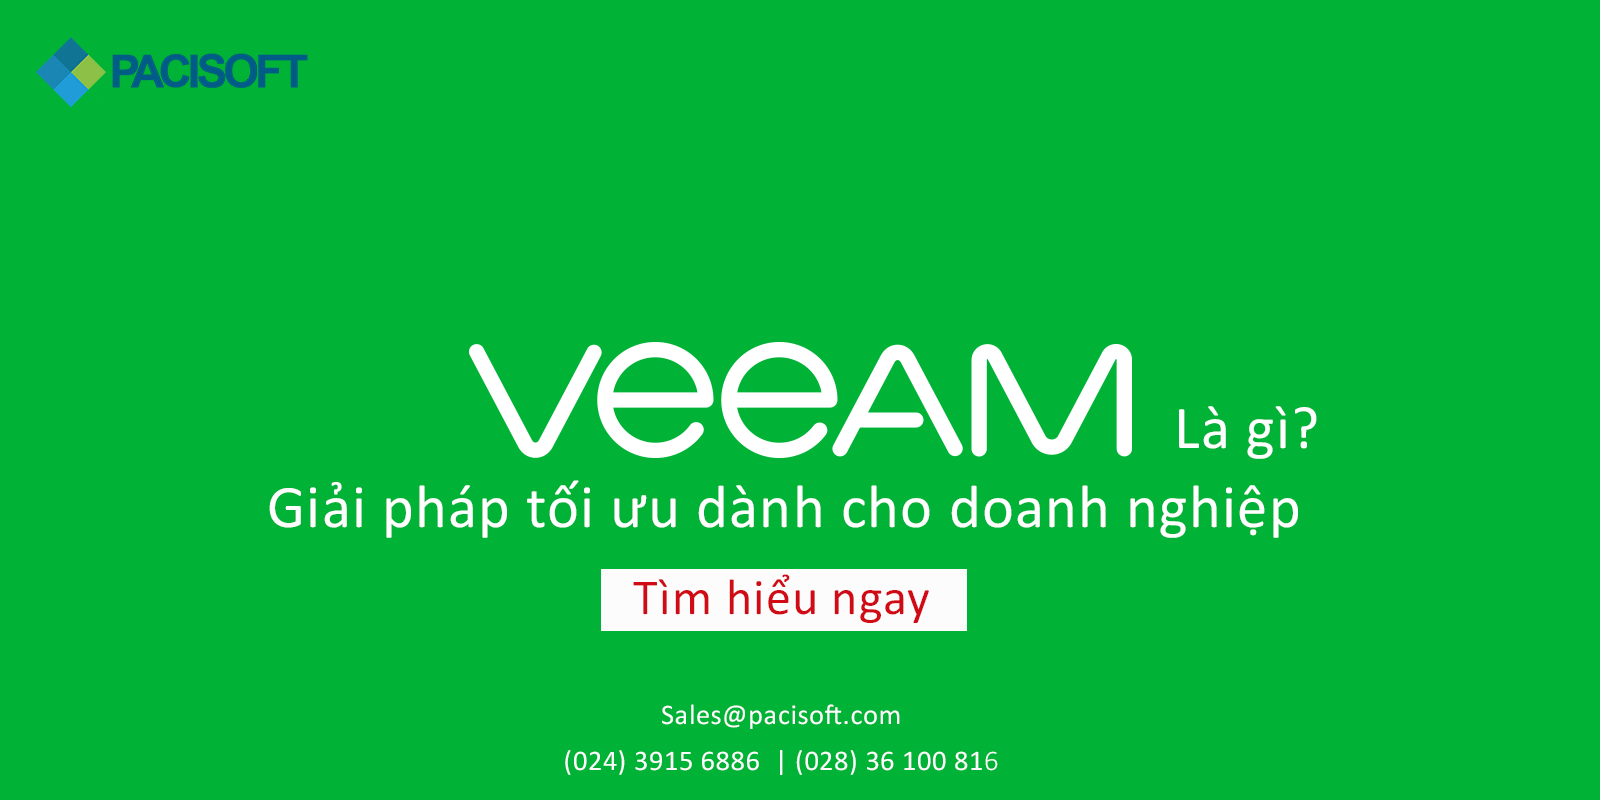 Veeam - Giải pháp tối ưu dành cho doanh nghiệp